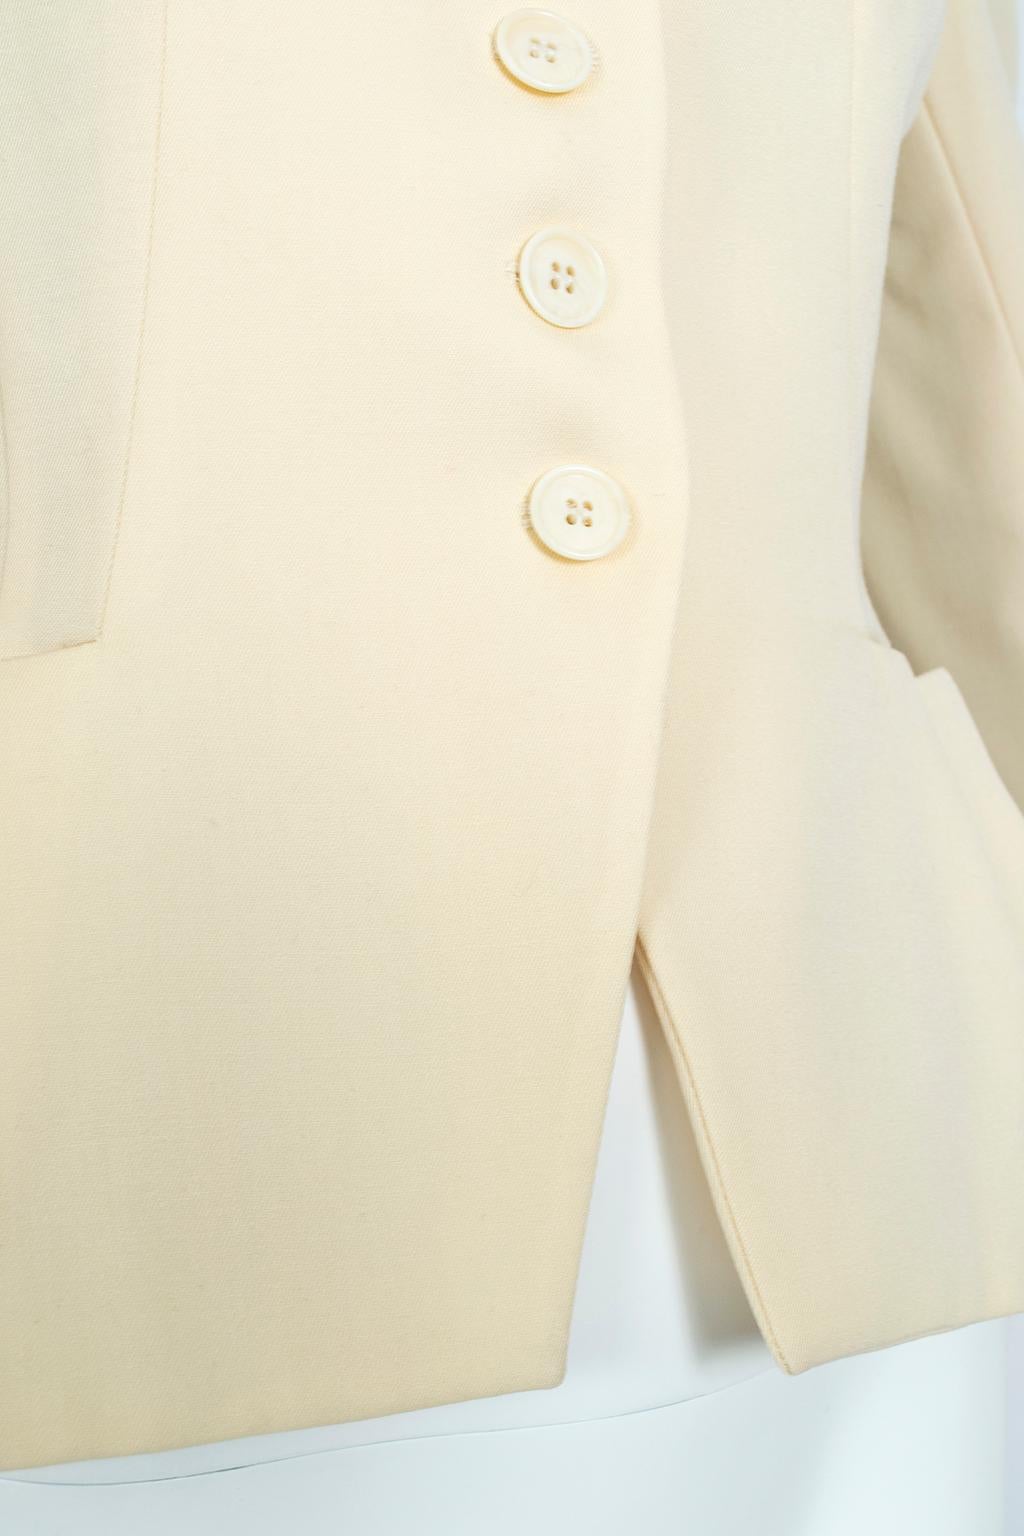 Norma Kamali Ivory Wool Dioresque Sculpted Bar Jacket Peplum Blazer - XS, 1980s 1